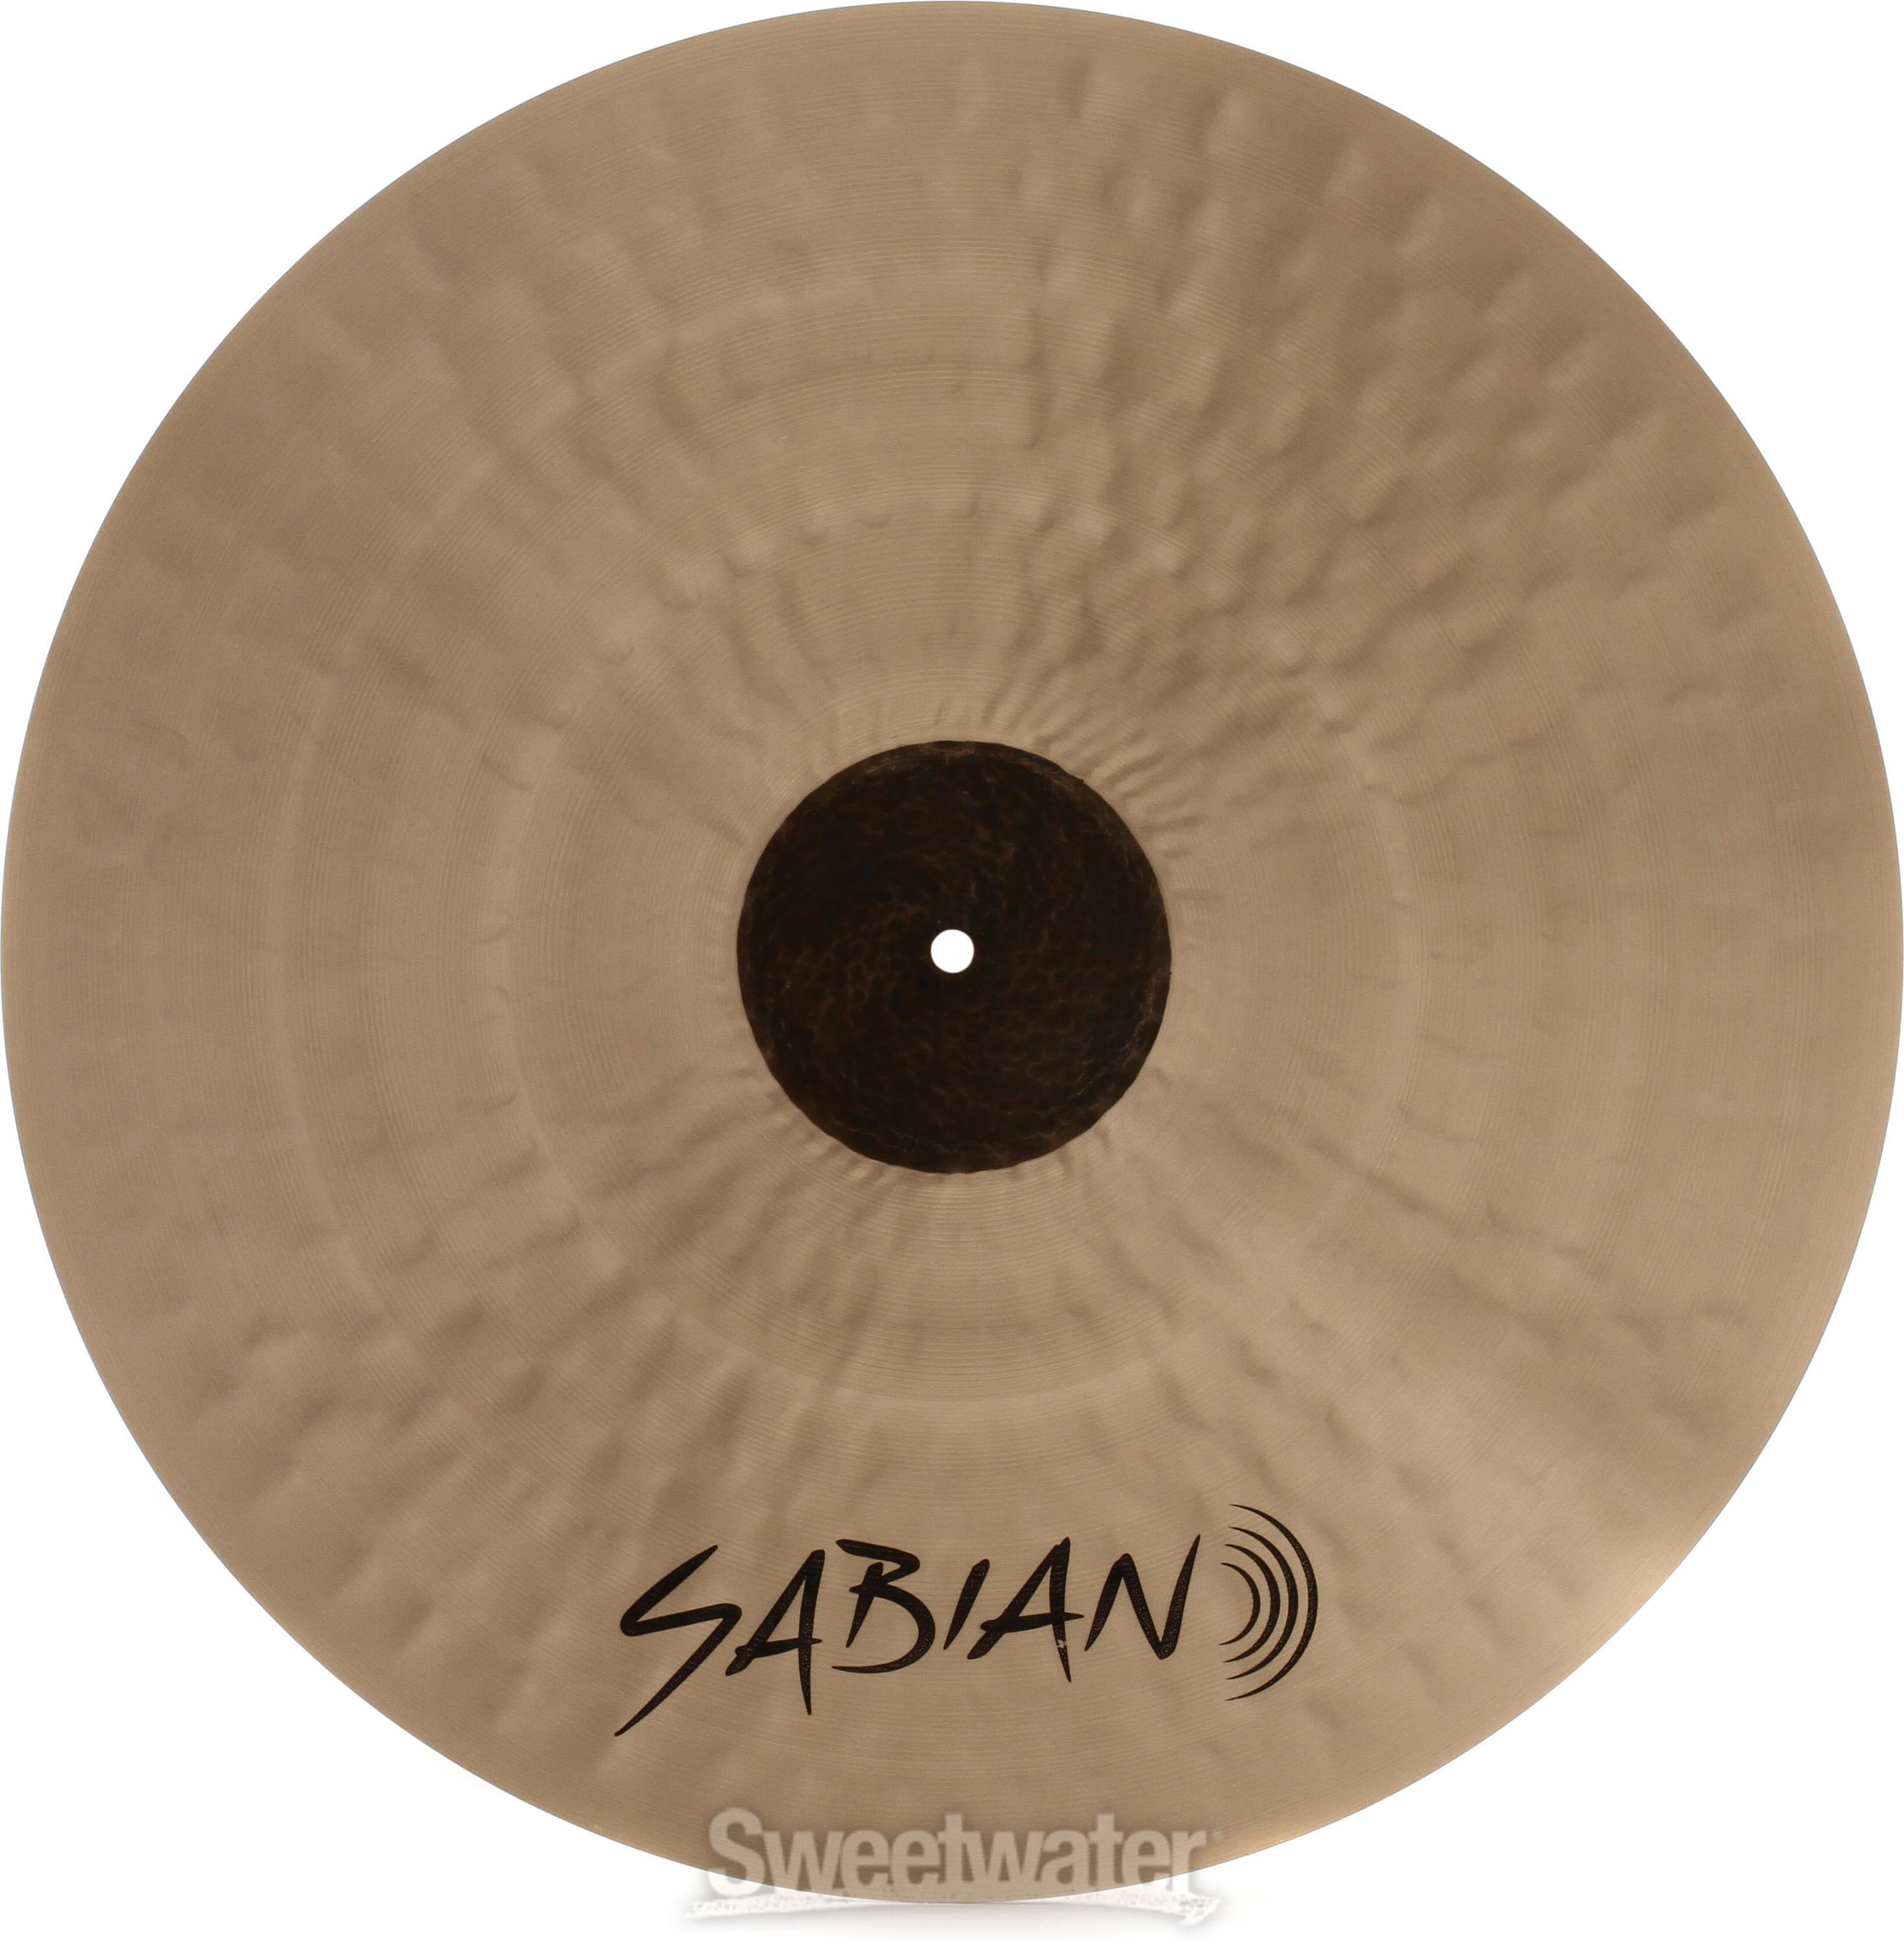 Sabian 22 inch HHX Complex Medium Ride Cymbal